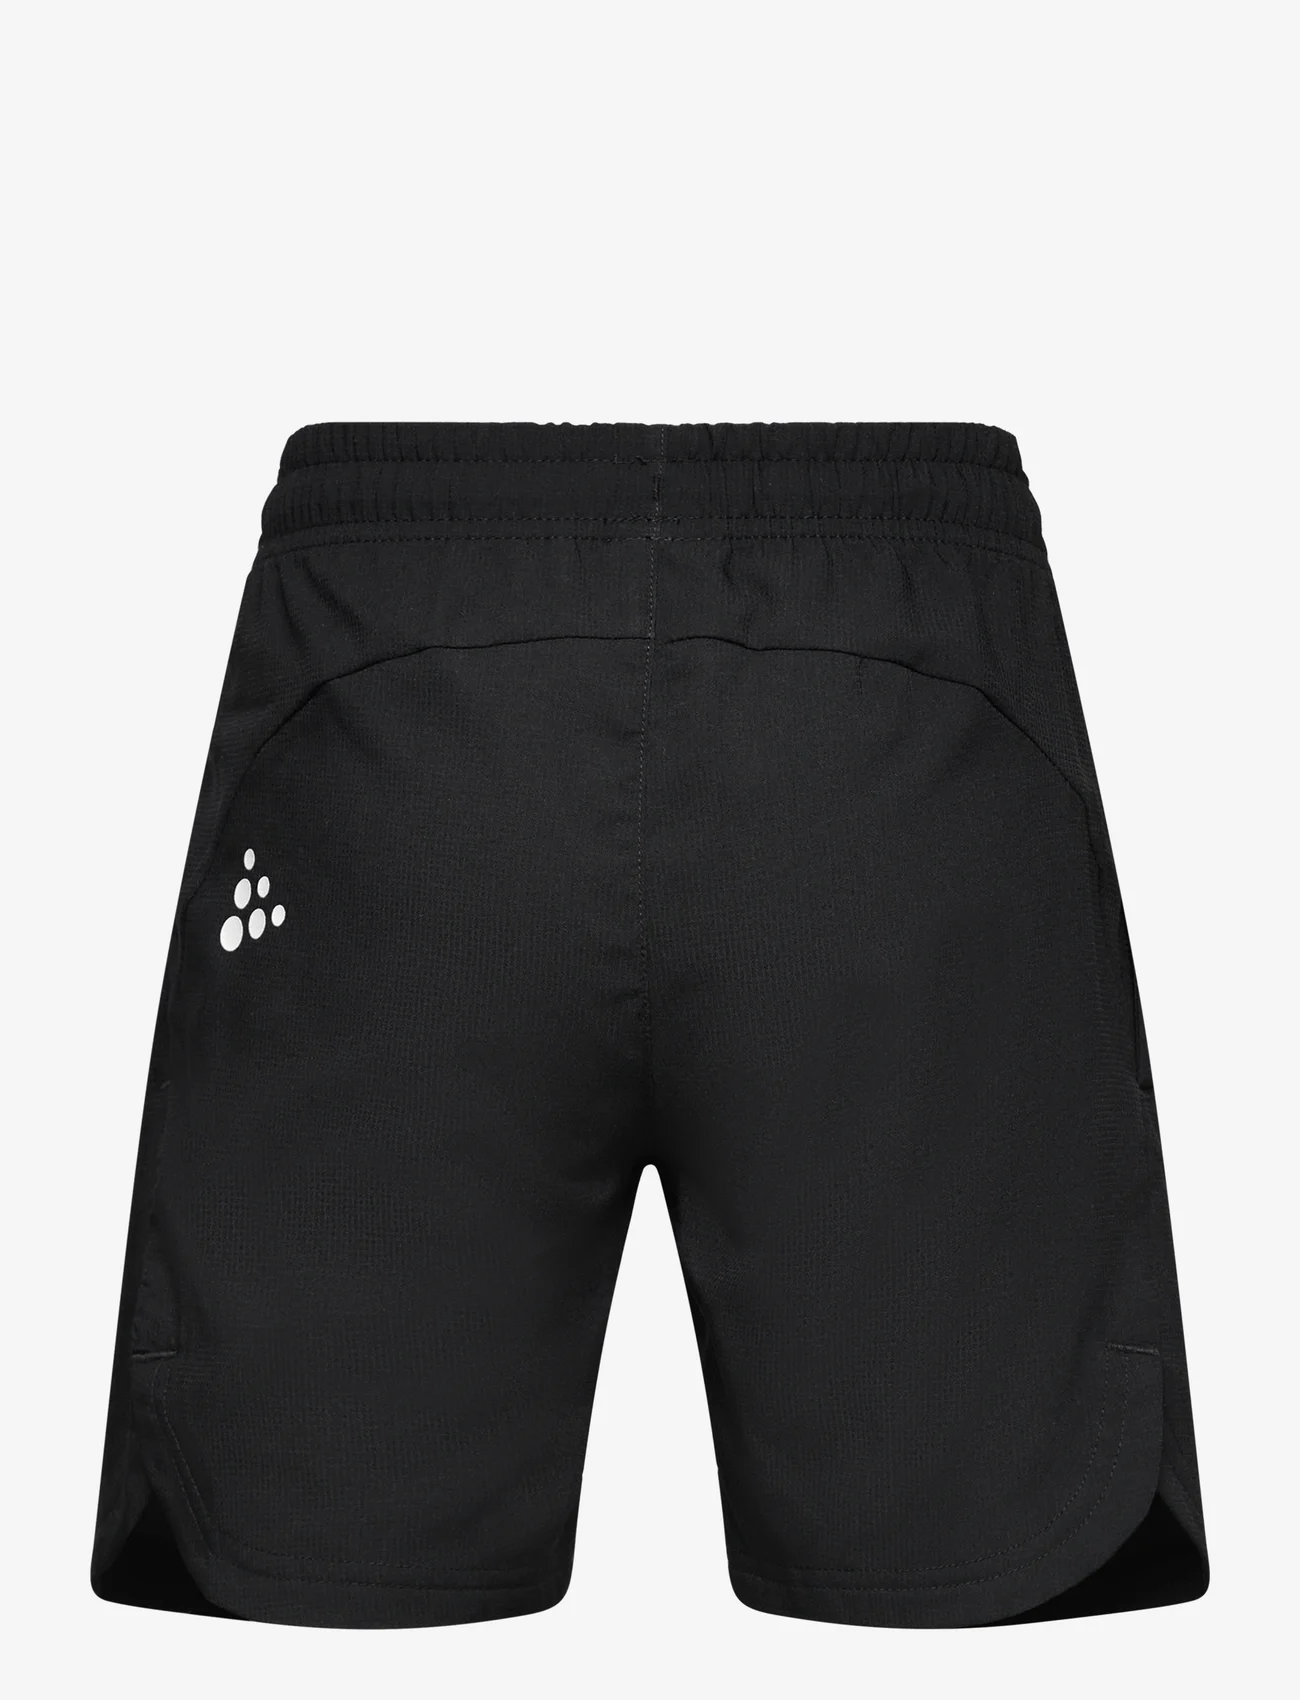 Craft - Rush 2.0 Shorts JR - lühikesed dressipüksid - black - 1